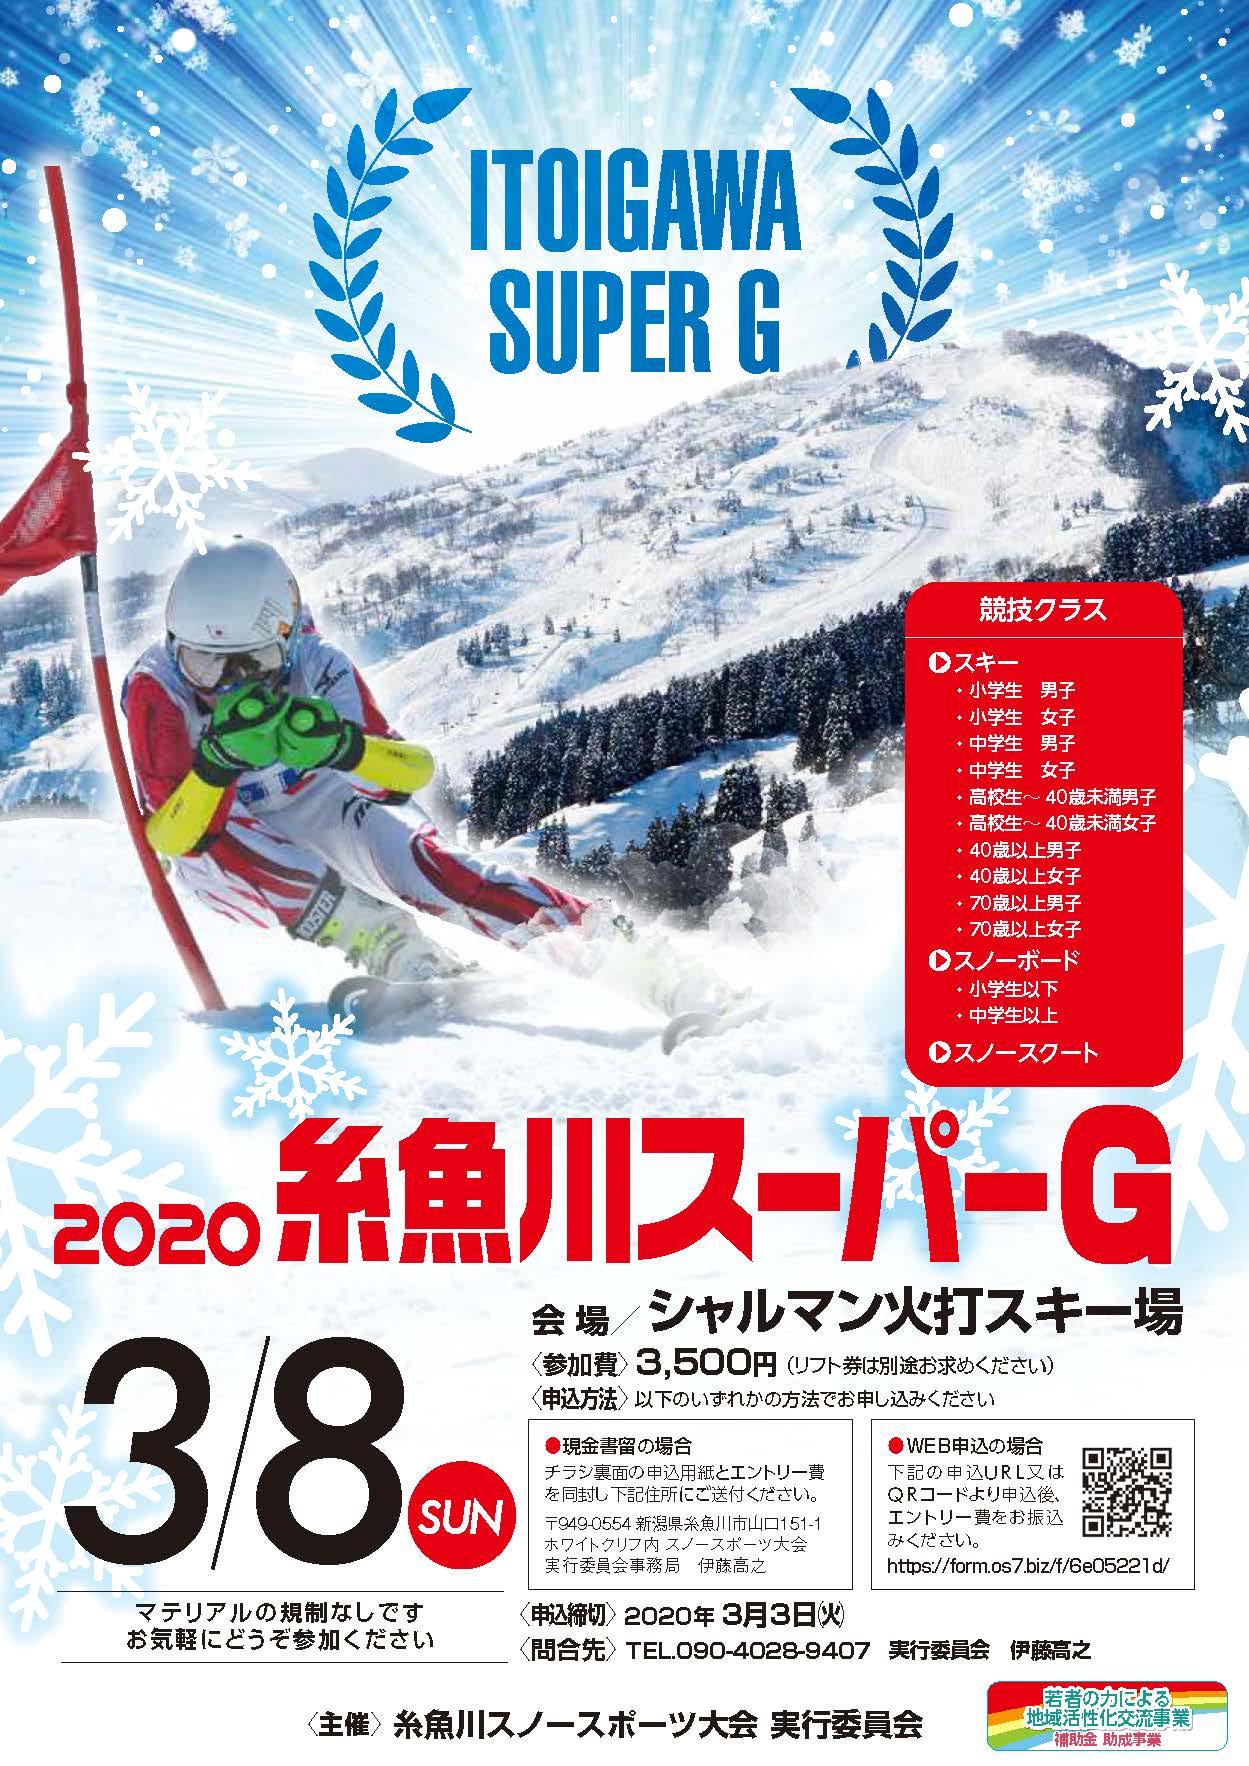 糸魚川スーパーG開催決定 | 伝統と最新技術 オーストリアスキー教室